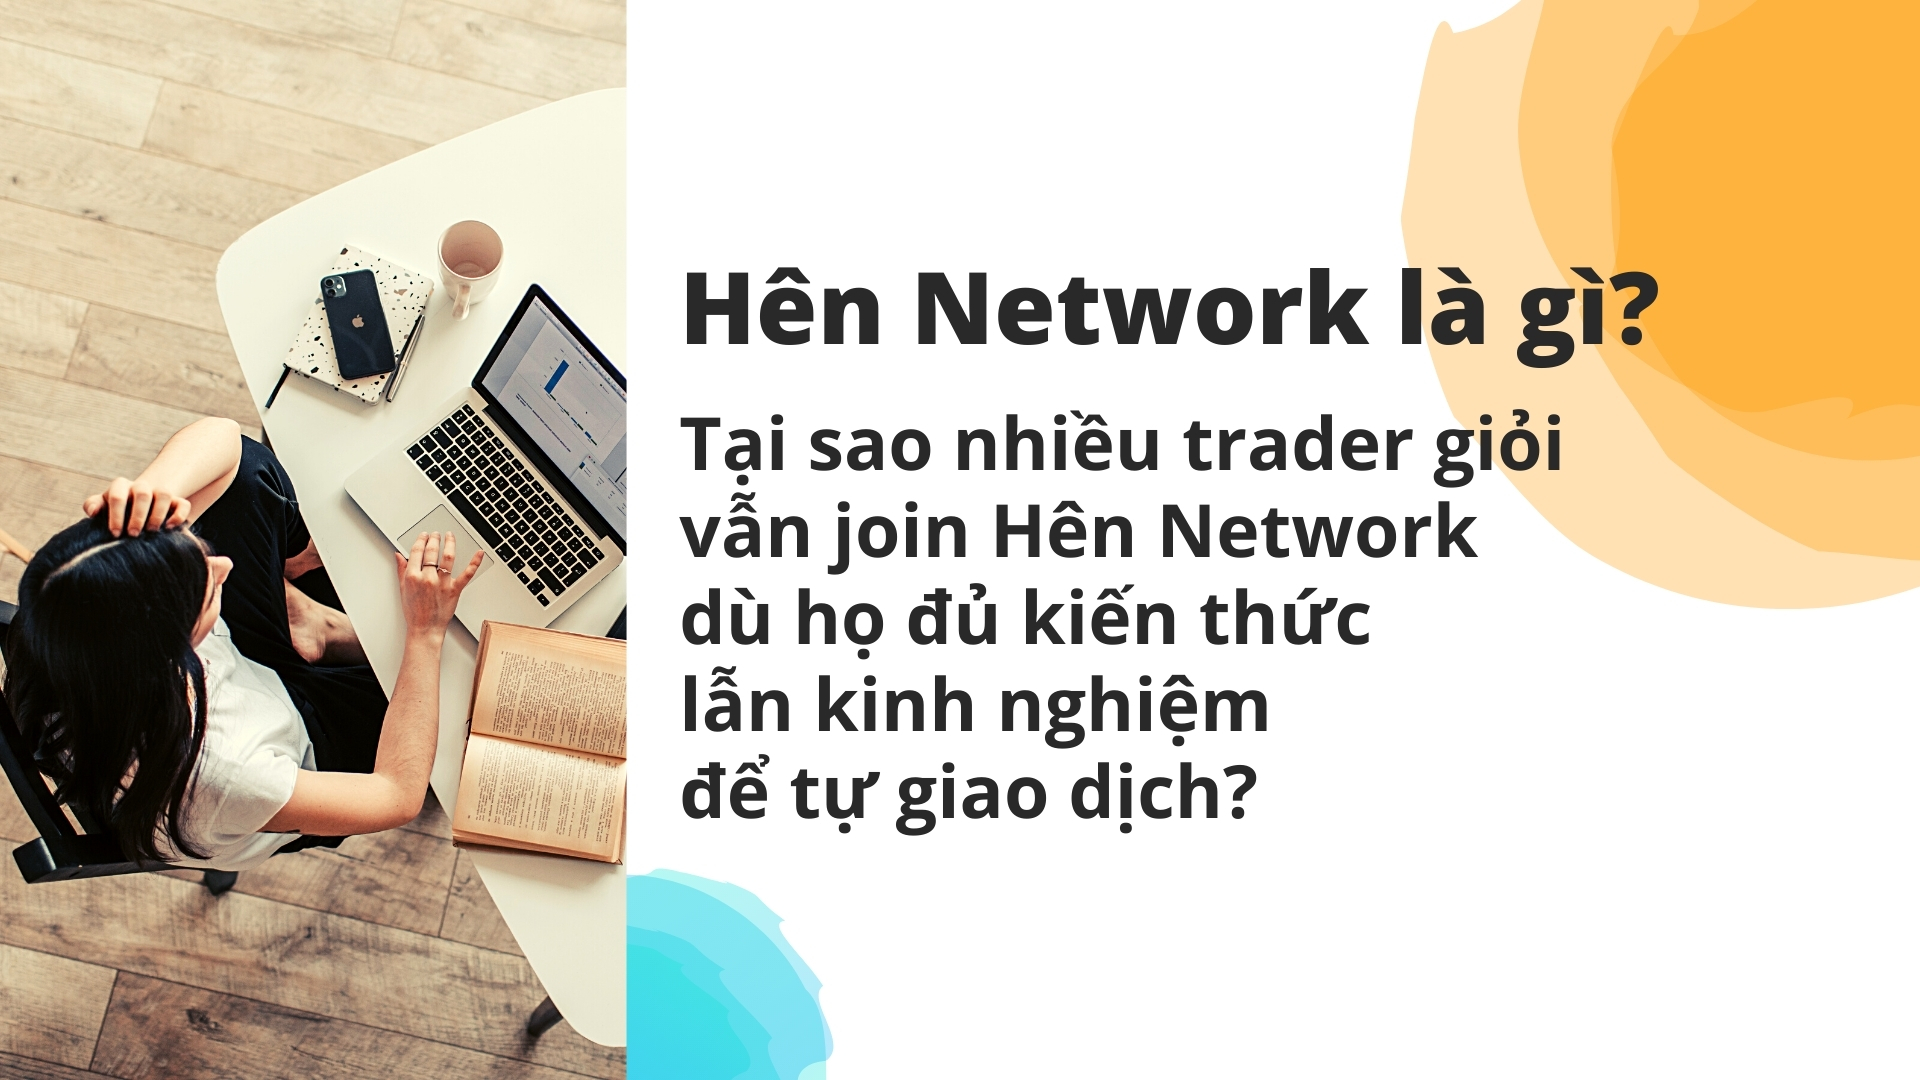 Hên Network là gì? Tại sao nhiều trader giỏi vẫn join Hên Network dù họ đủ kiến thức lẫn kinh nghiệm để tự giao dịch?